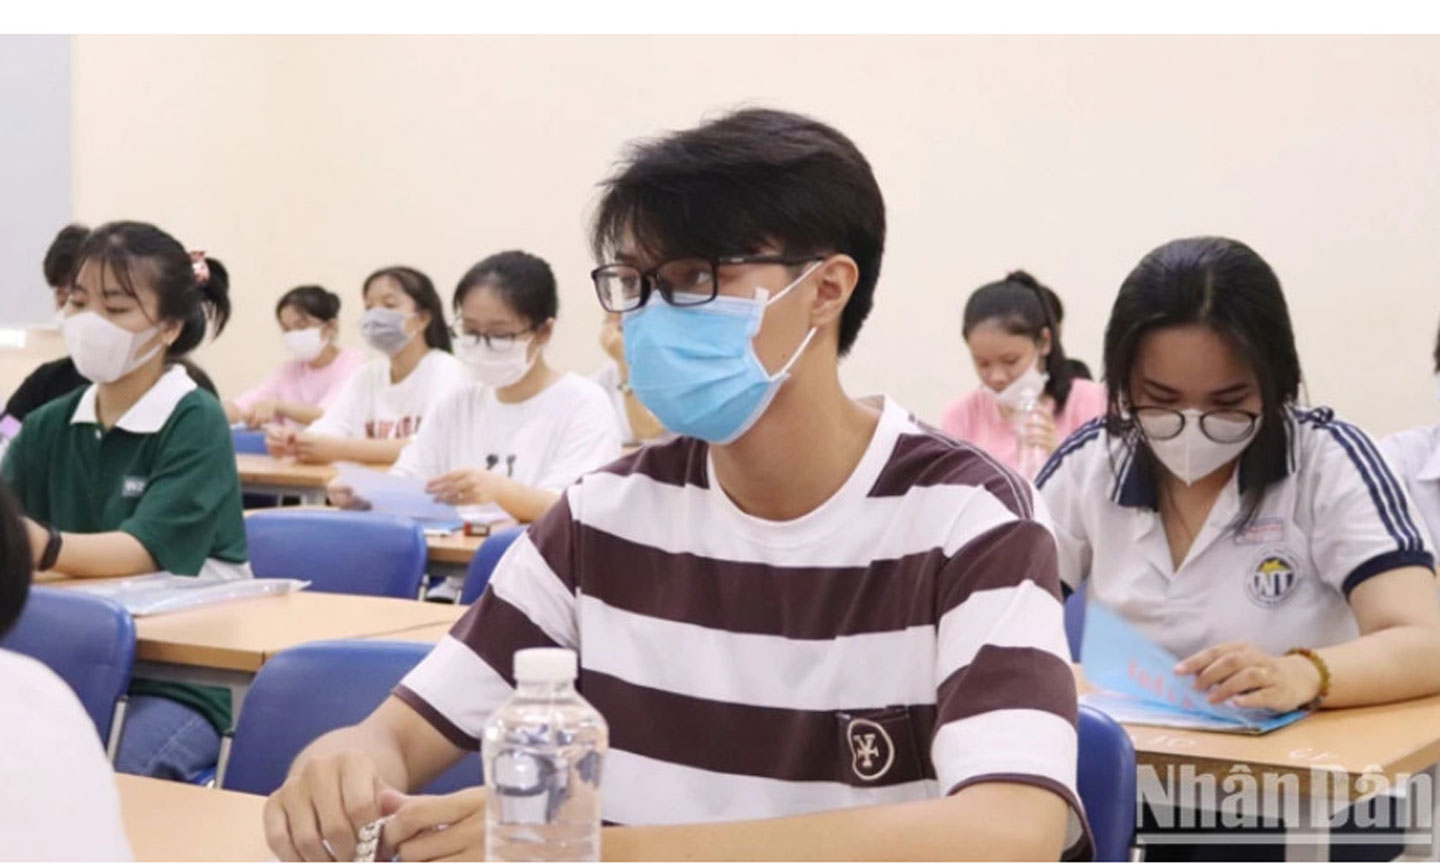 Thí sinh tham gia kỳ thi đánh giá năng lực đợt 1 của Đại học Quốc gia Thành phố Hồ Chí Minh tại Thành phố Hồ Chí Minh.